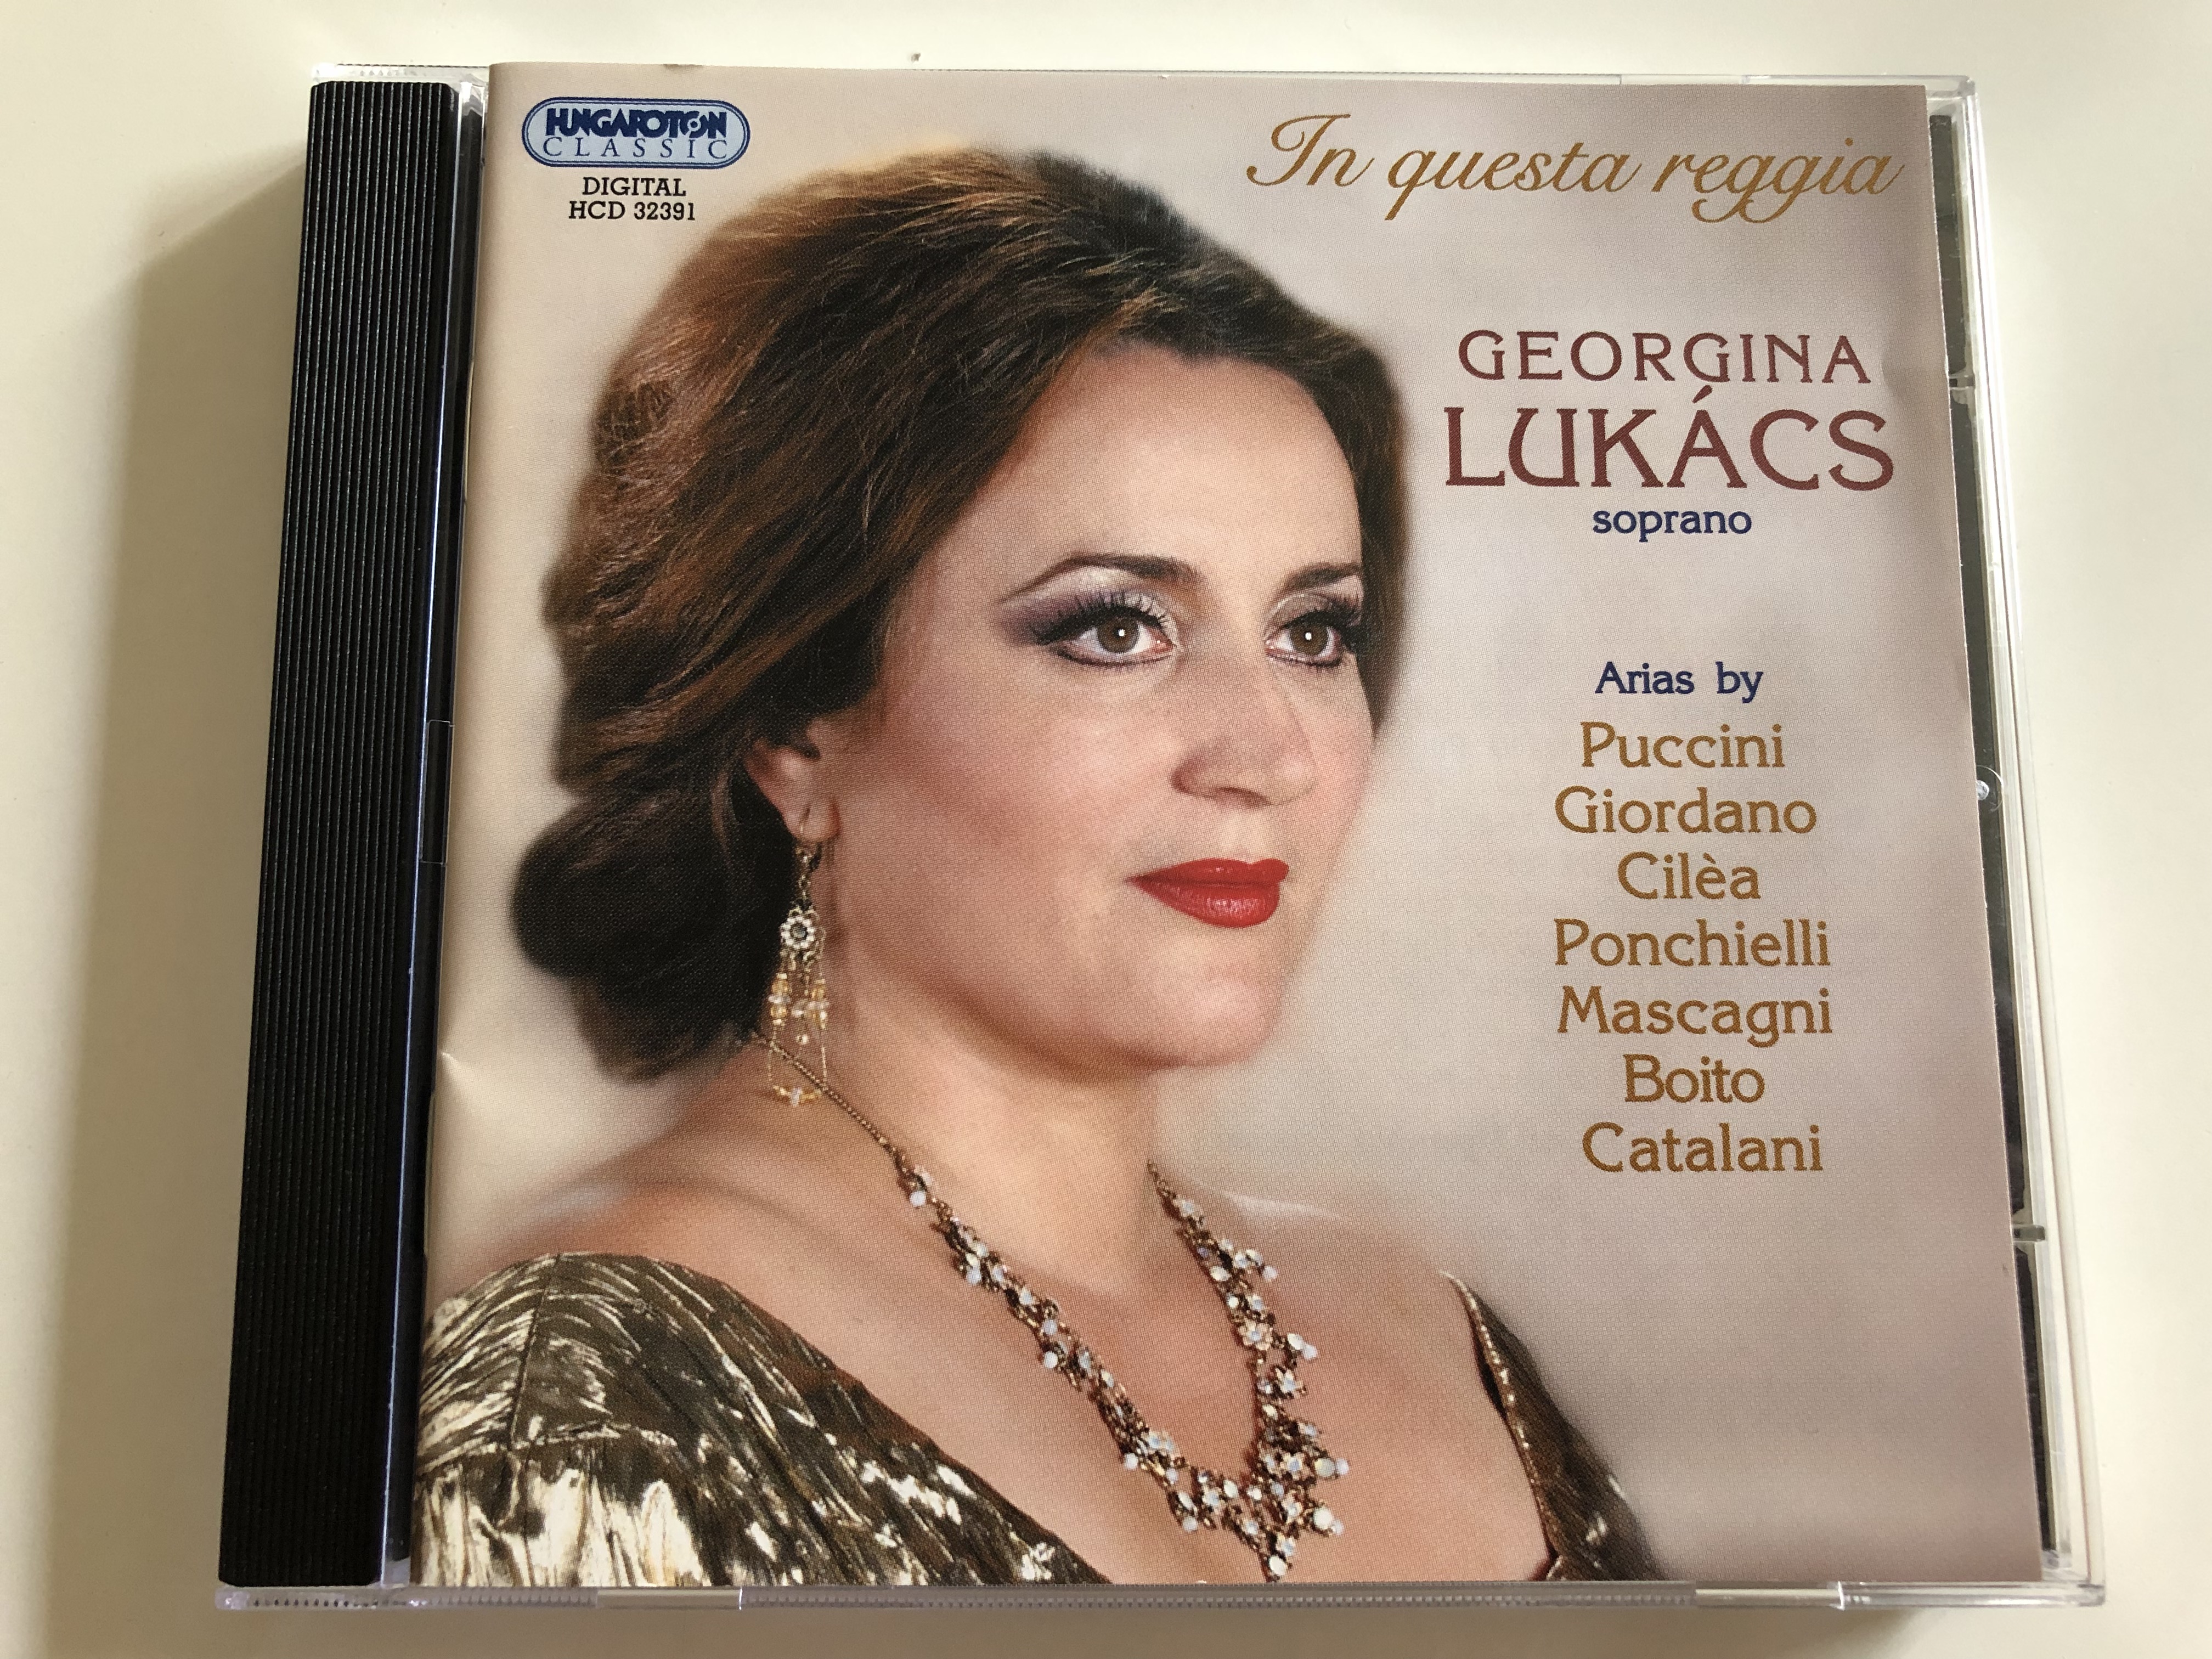 in-questa-reggia-georgina-luk-cs-soprano-arias-by-puccini-giordano-cil-a-ponchielli-mascagni-boito-catalani-hungarian-state-opera-orchestra-cond.-gergely-kessely-k-hungaroton-hcd-32391audio-cd-1-.jpg